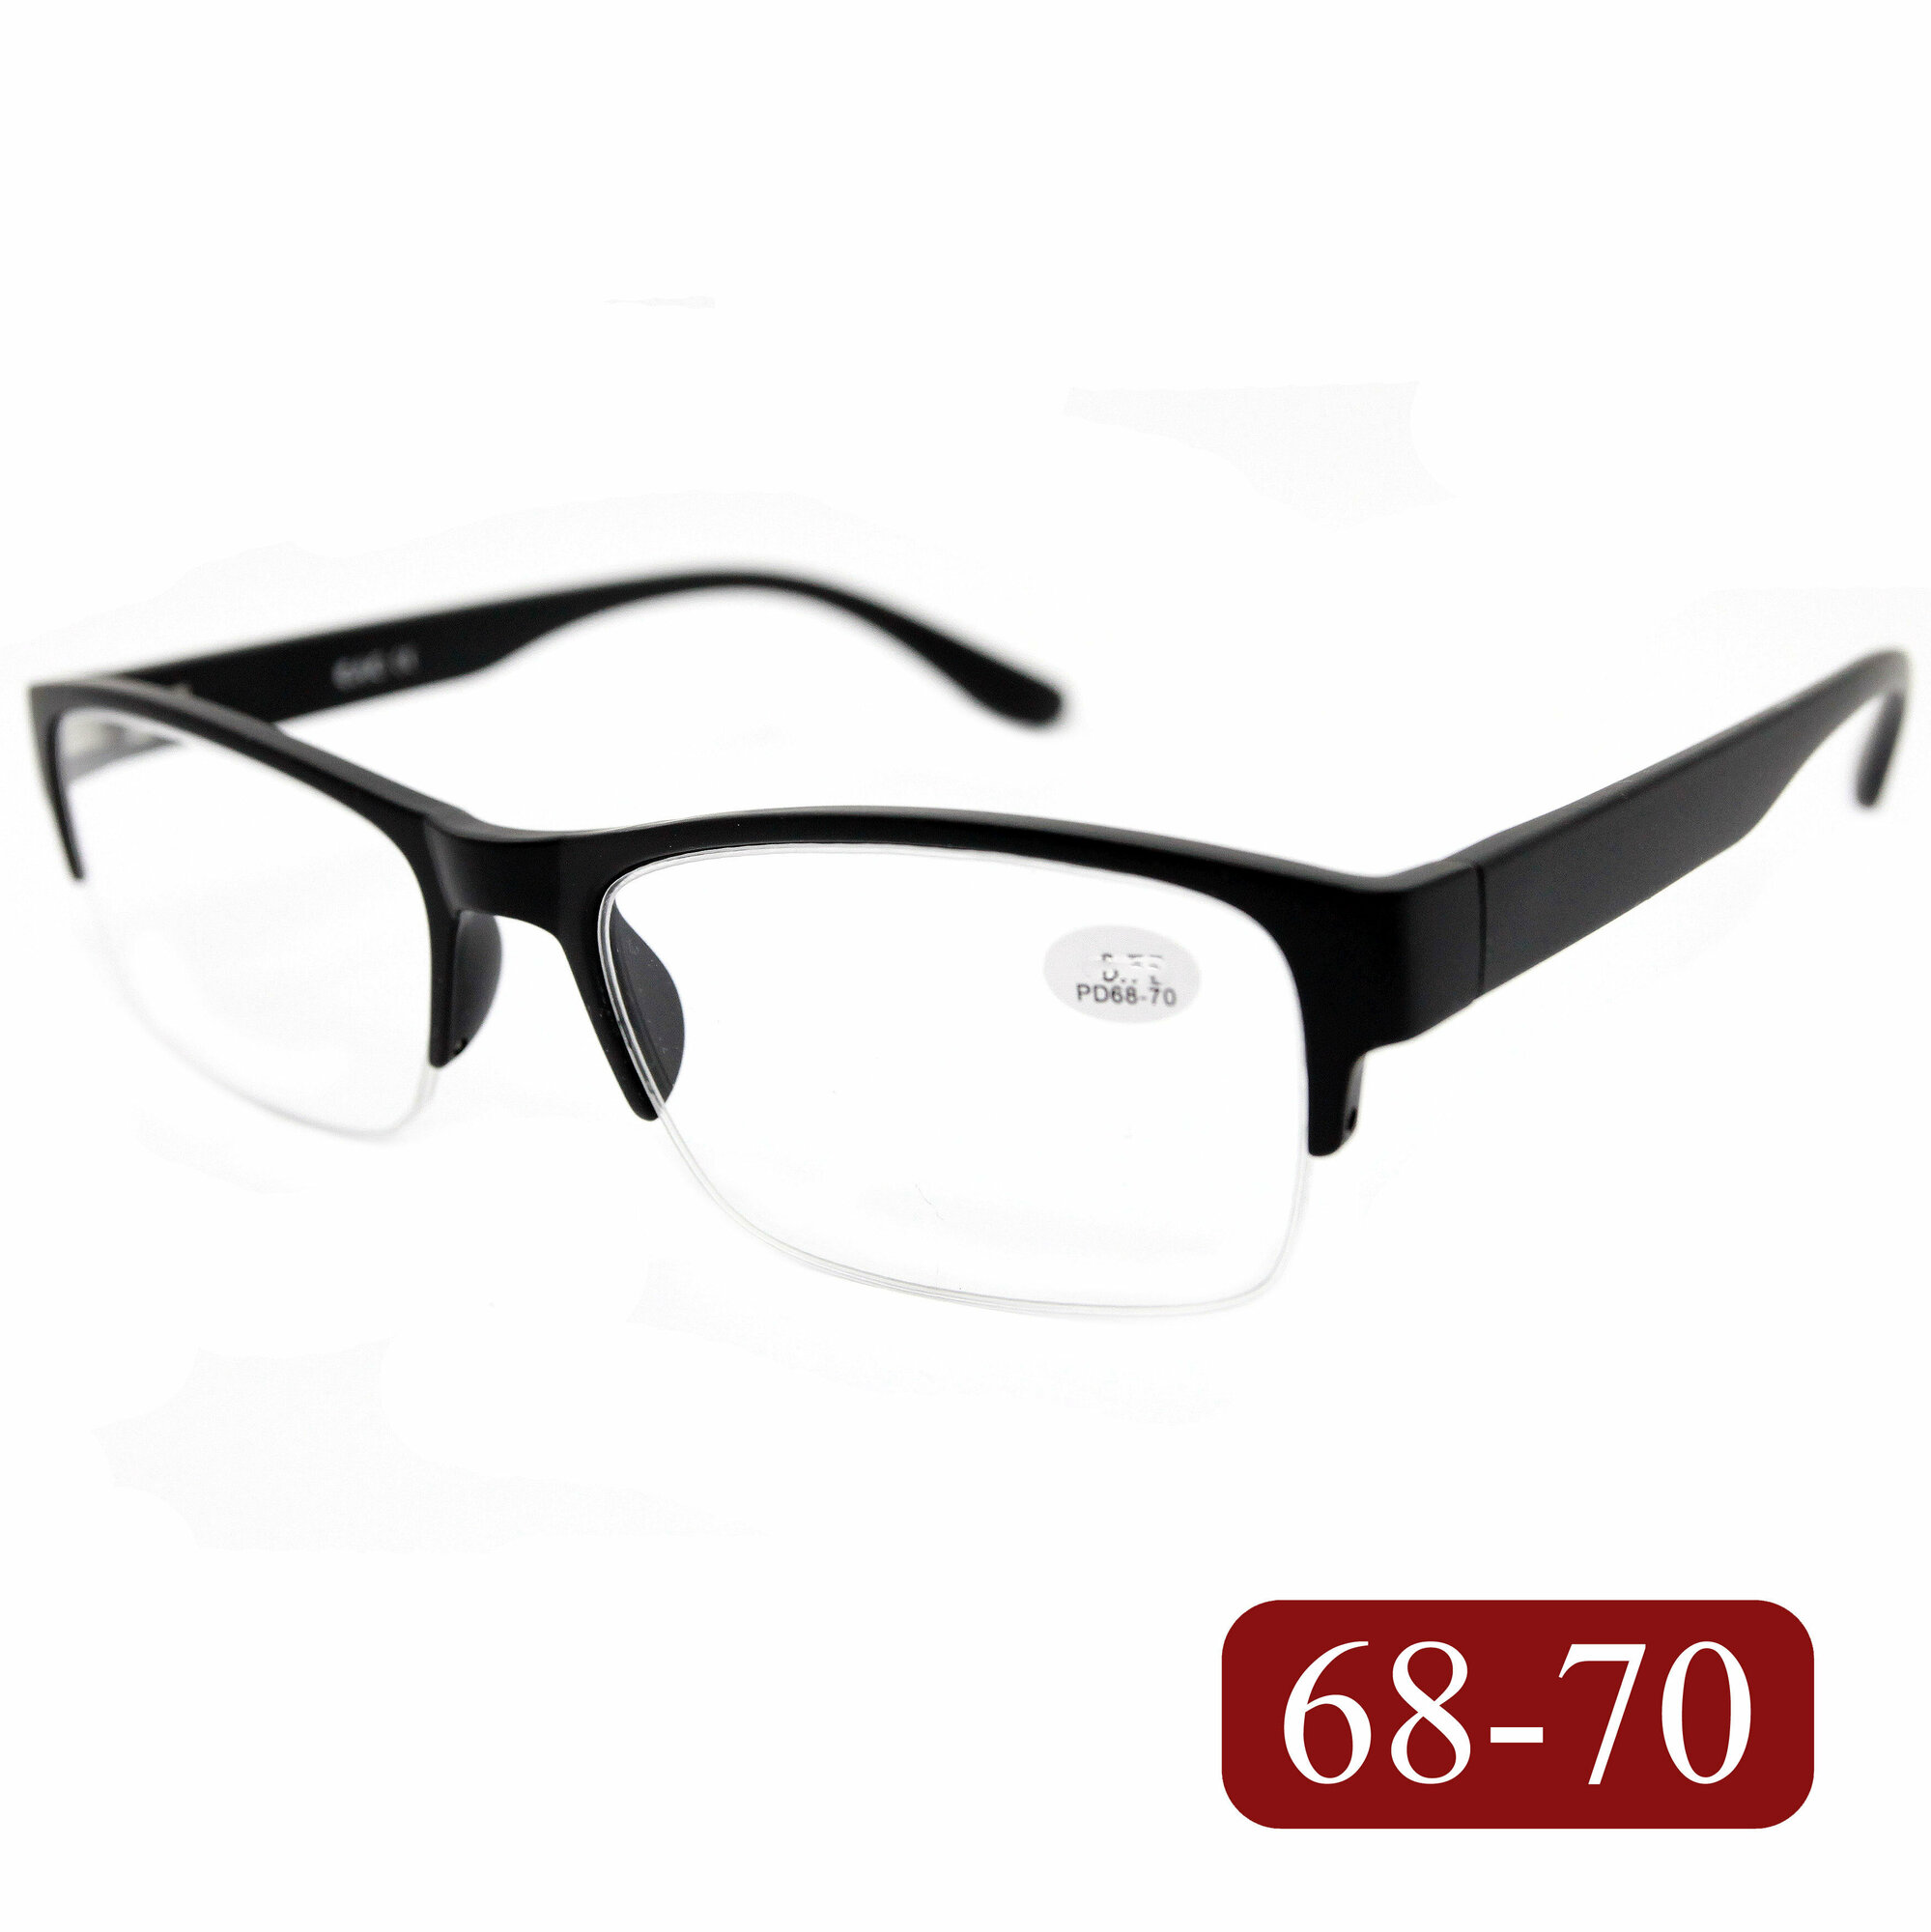 Готовые очки РЦ 68-70 для зрения-чтения (+2.50) EAE 2130 C211 без футляра цвет черный линзы пластик РЦ 68-70